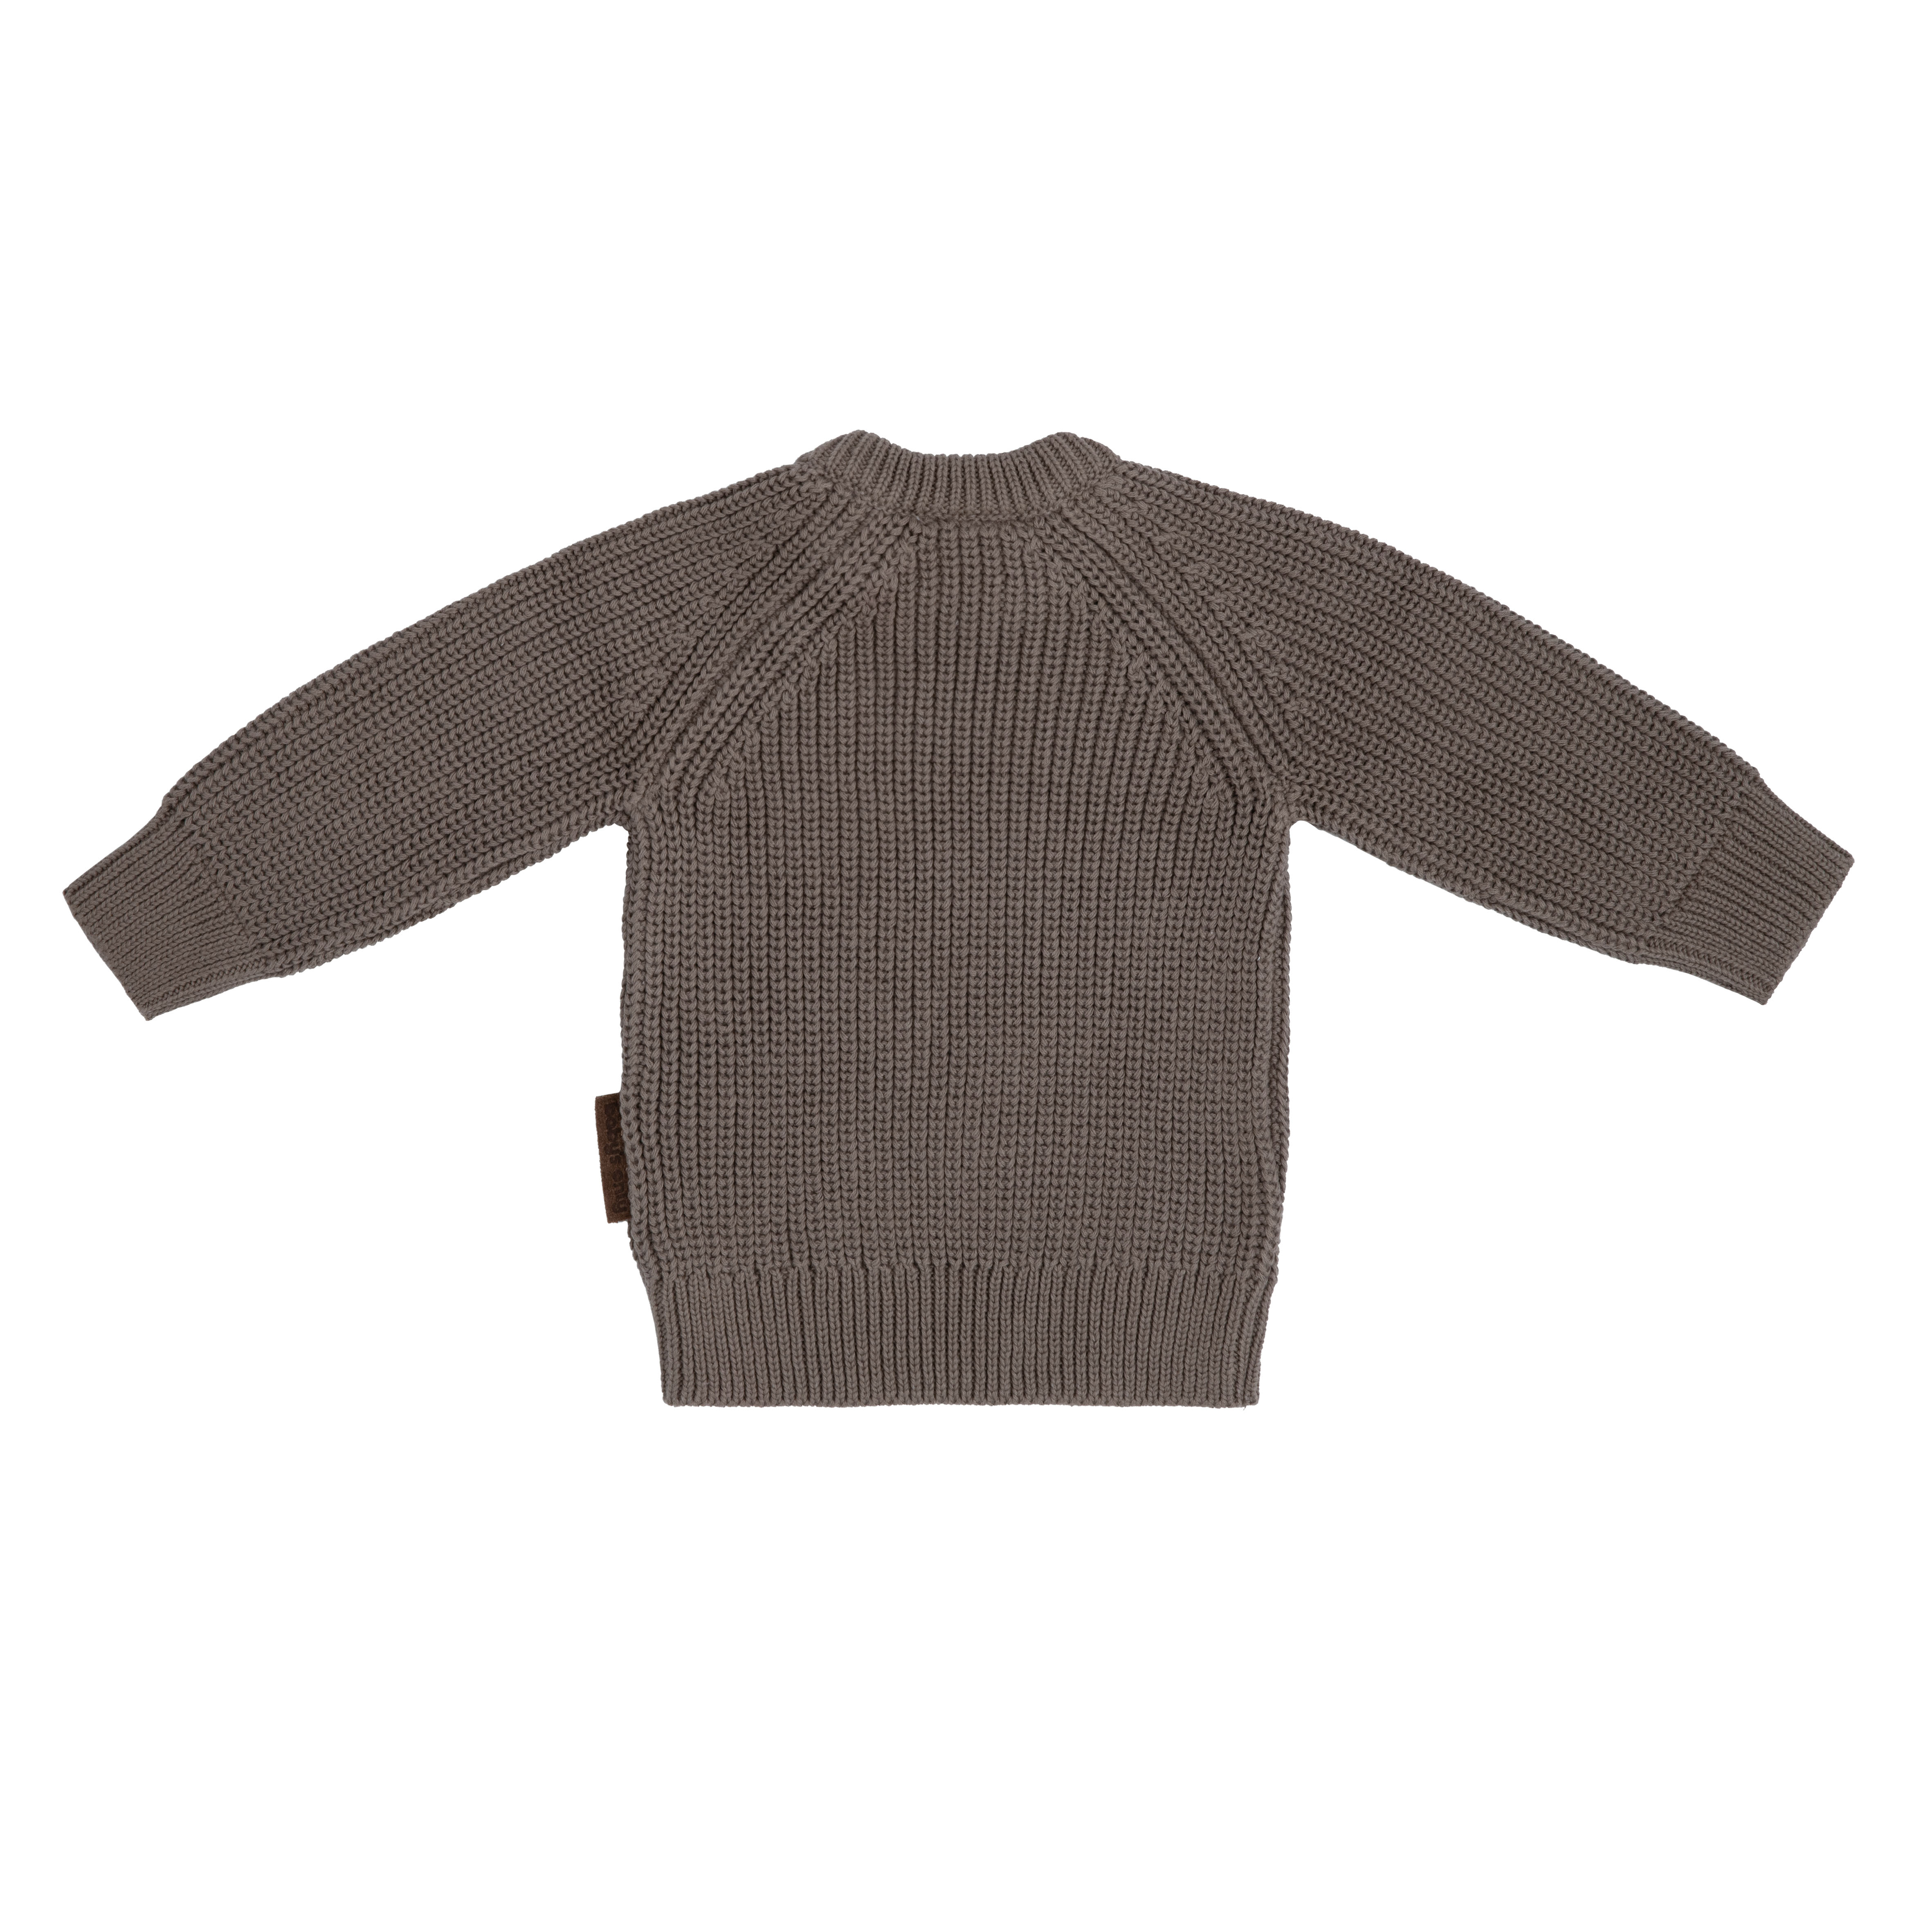 Sweater Soul mocha  - 68